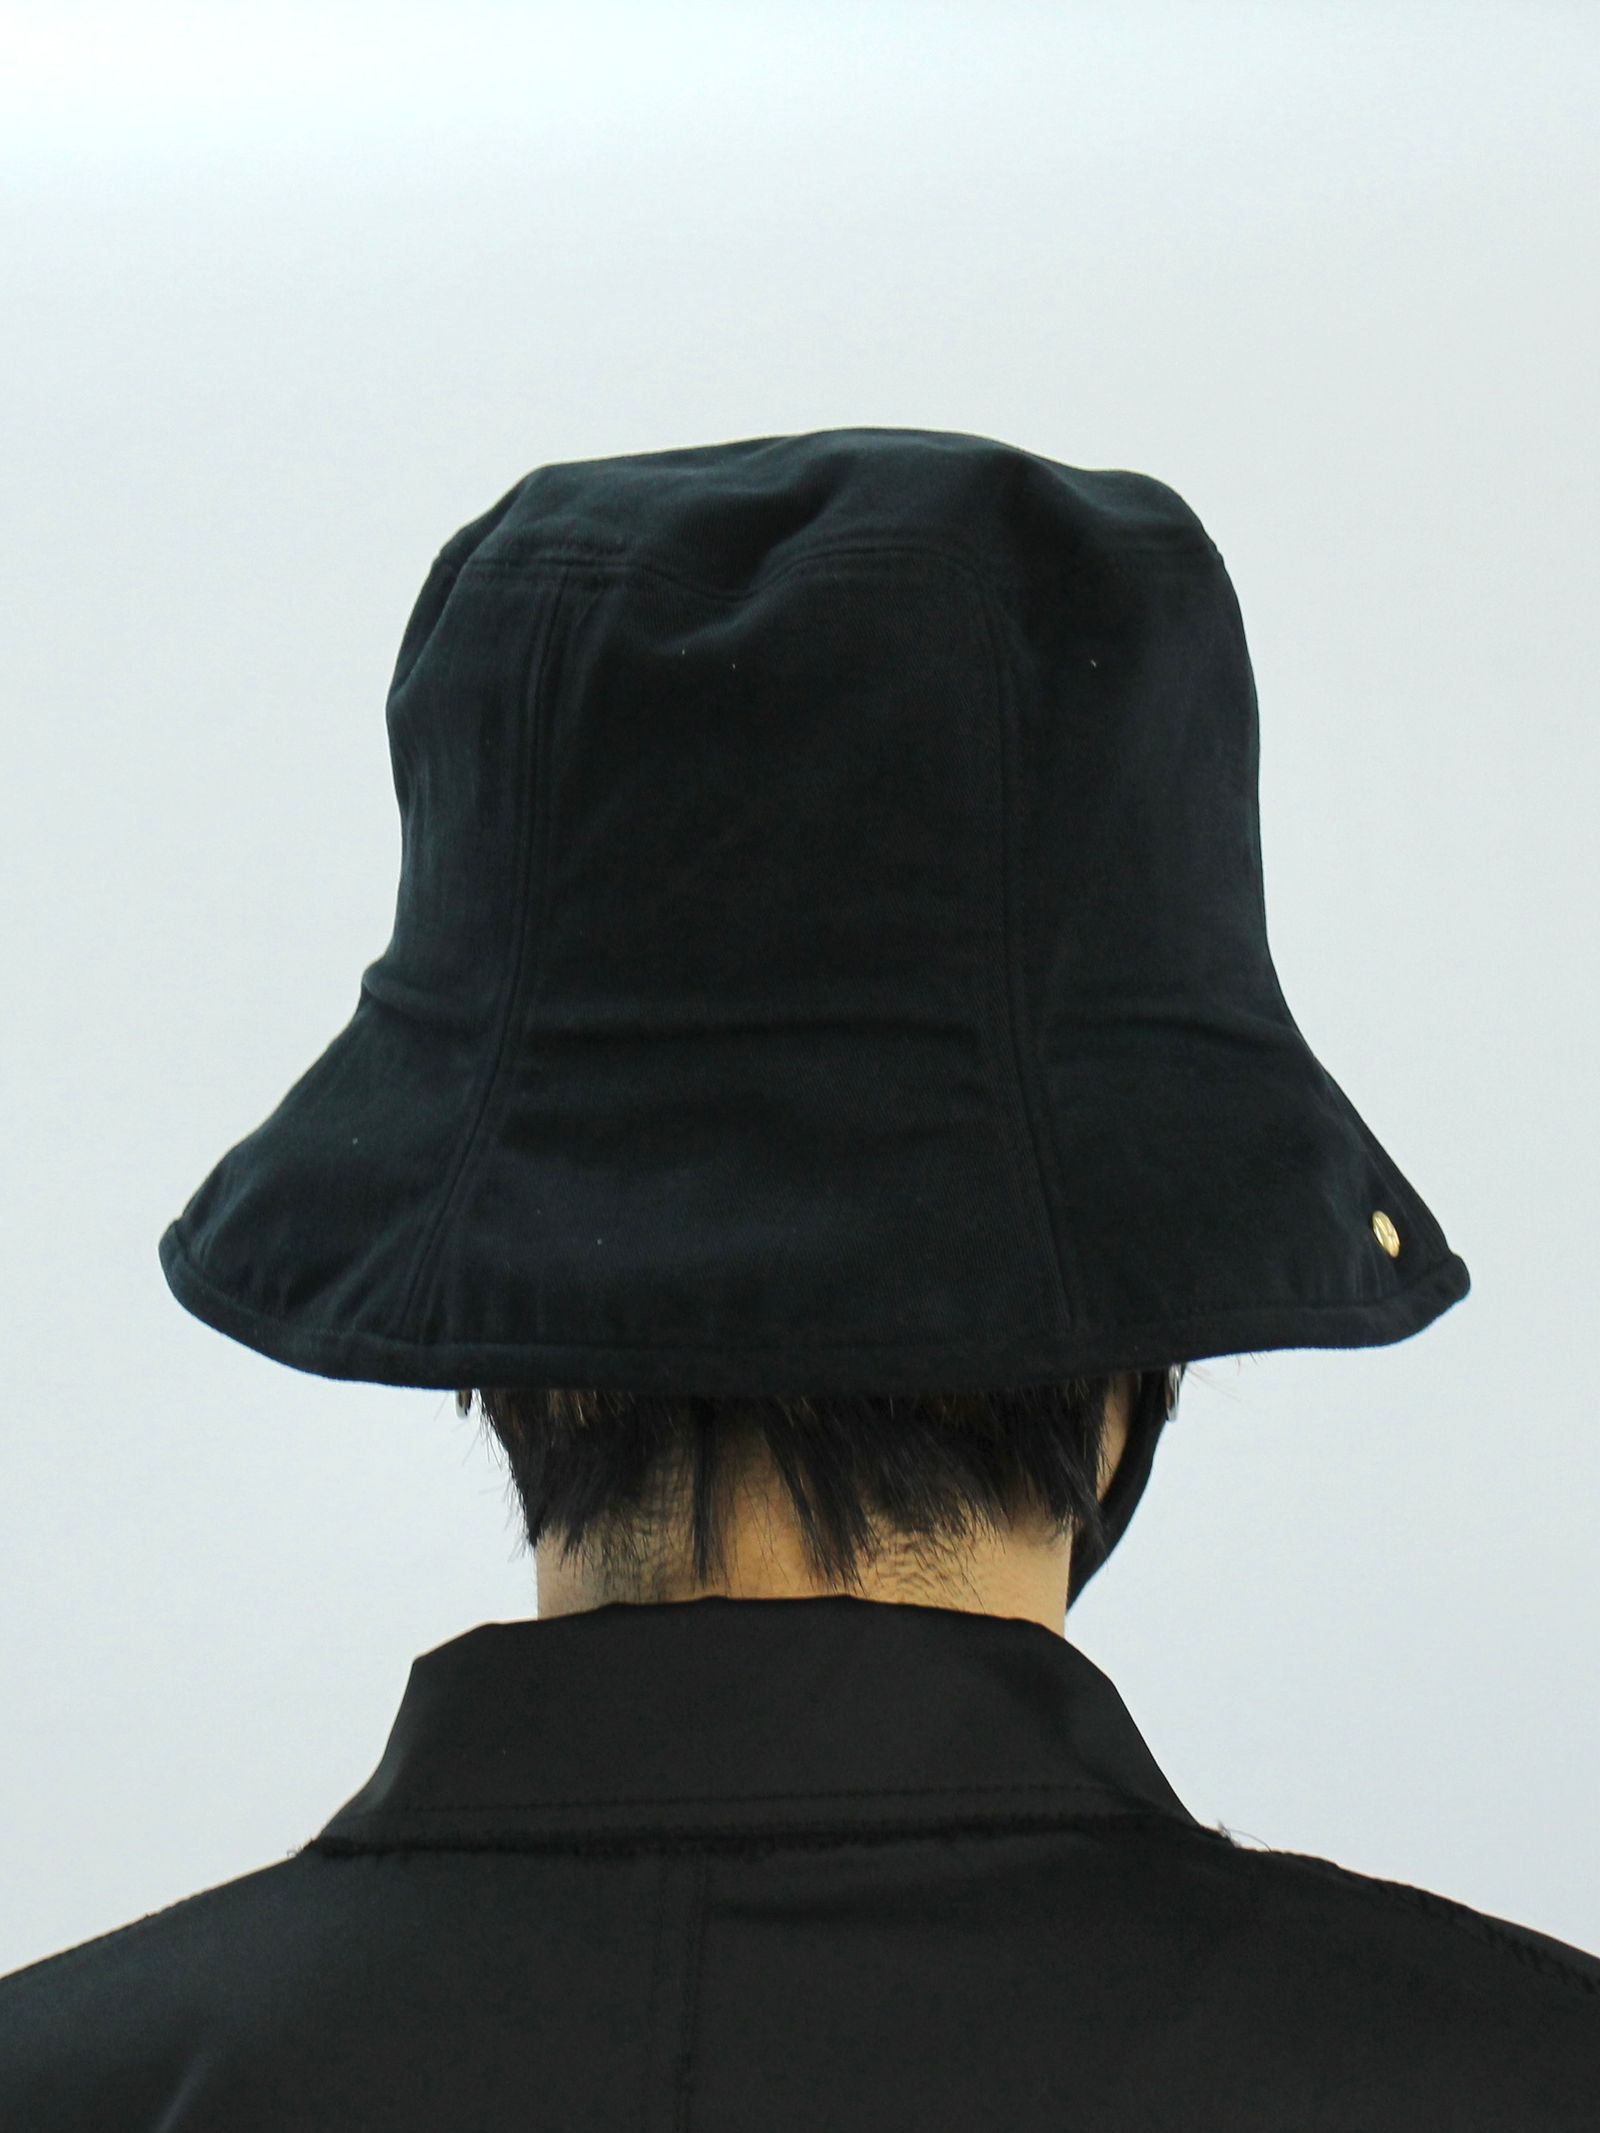 バケットハット / BLACK SEVEN PANEL BUCKET HAT / ブラック